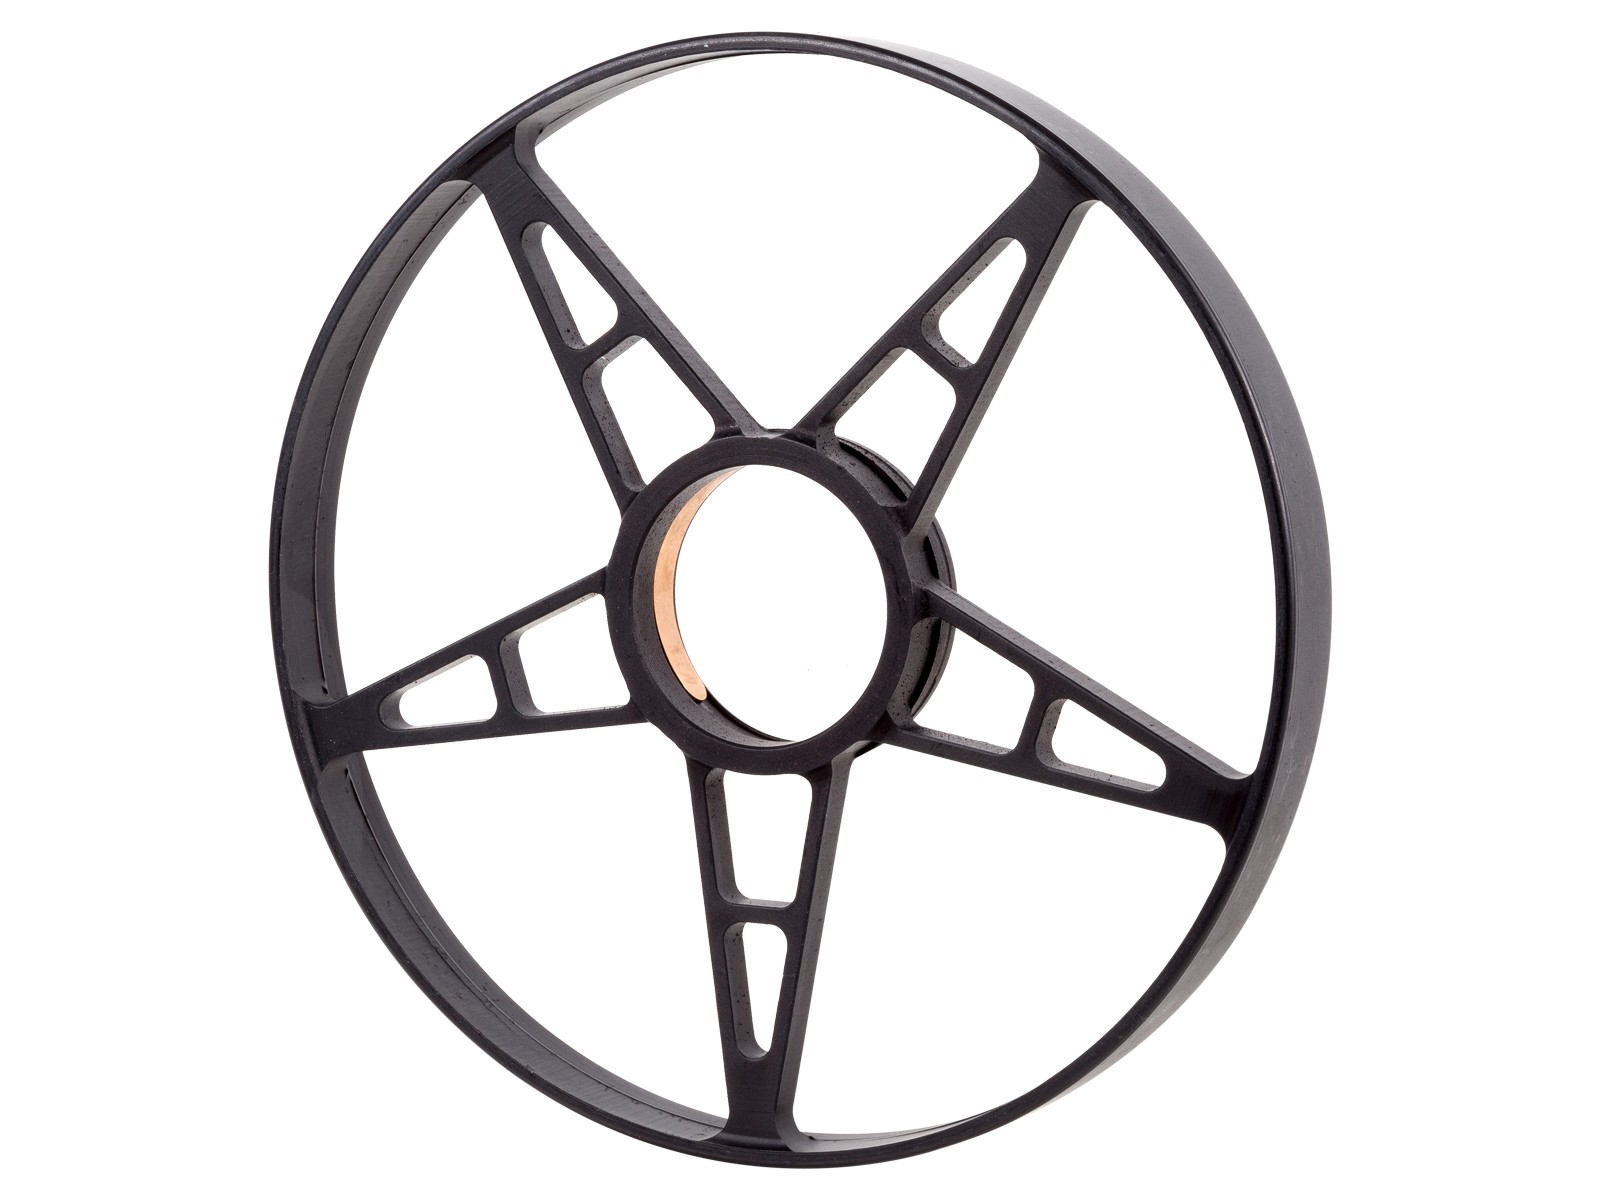 Aeon Scope Side Focus Wheel, 150mm Diameter